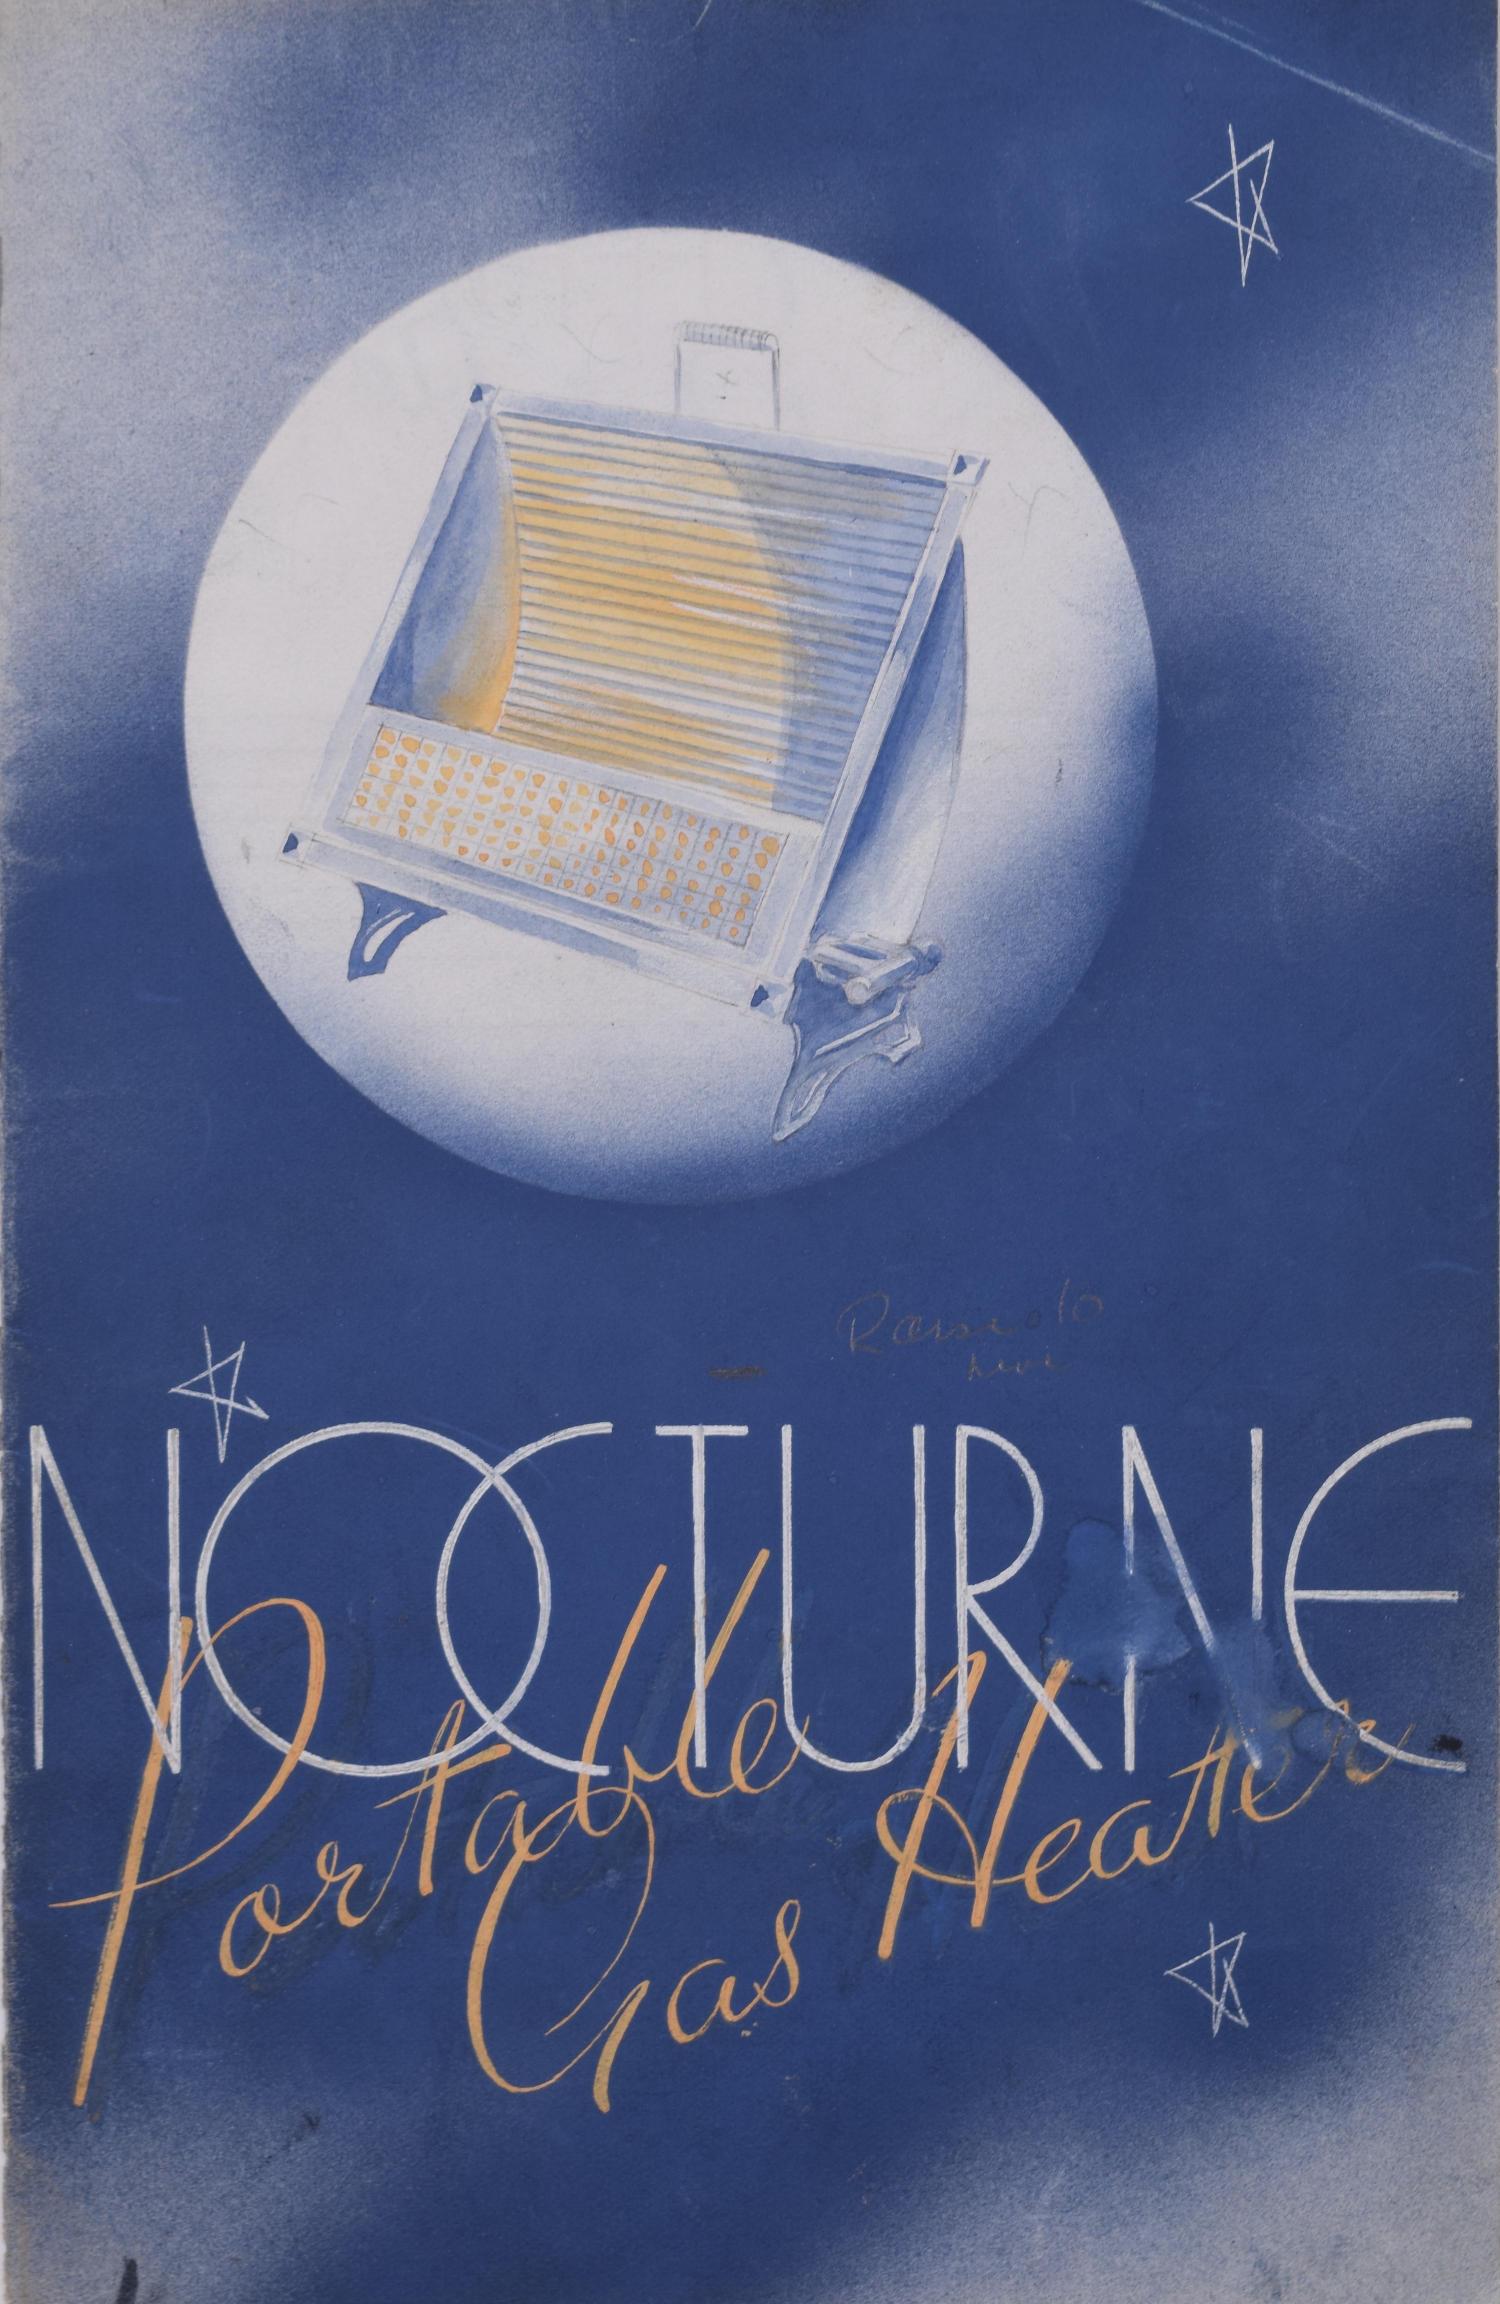 Nocturne Portable Gas Heater brochure painted Art Deco design by Brownbridge